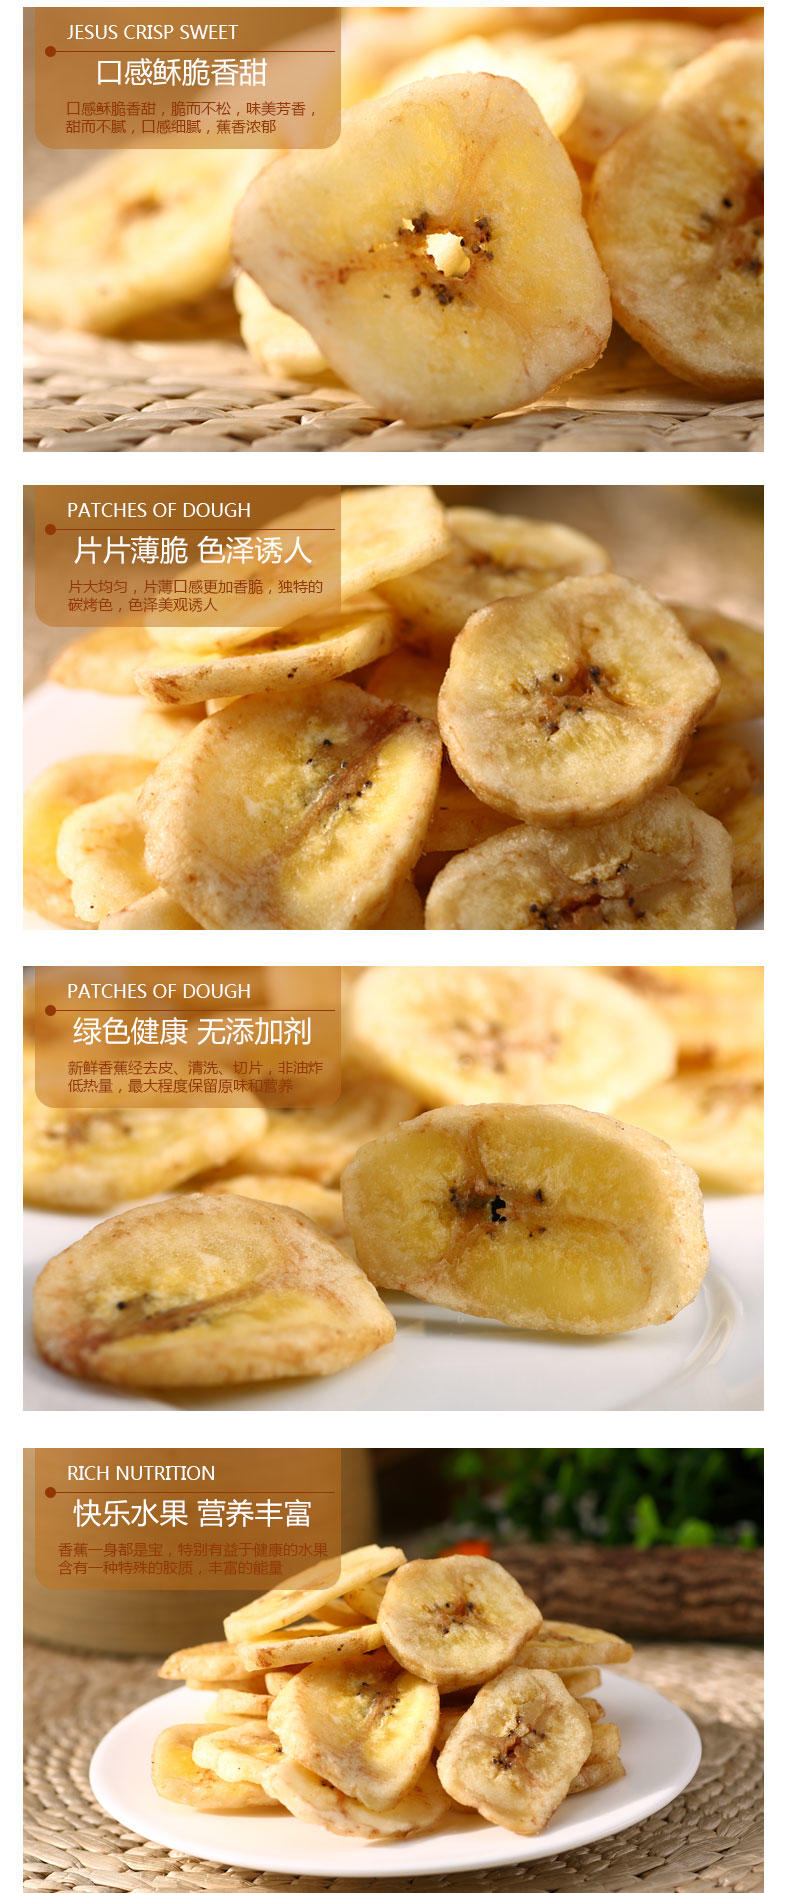 【心味果园】特级香蕉片158gx3袋特惠香蕉干坚果干蜜饯果脯系列休闲食品零食